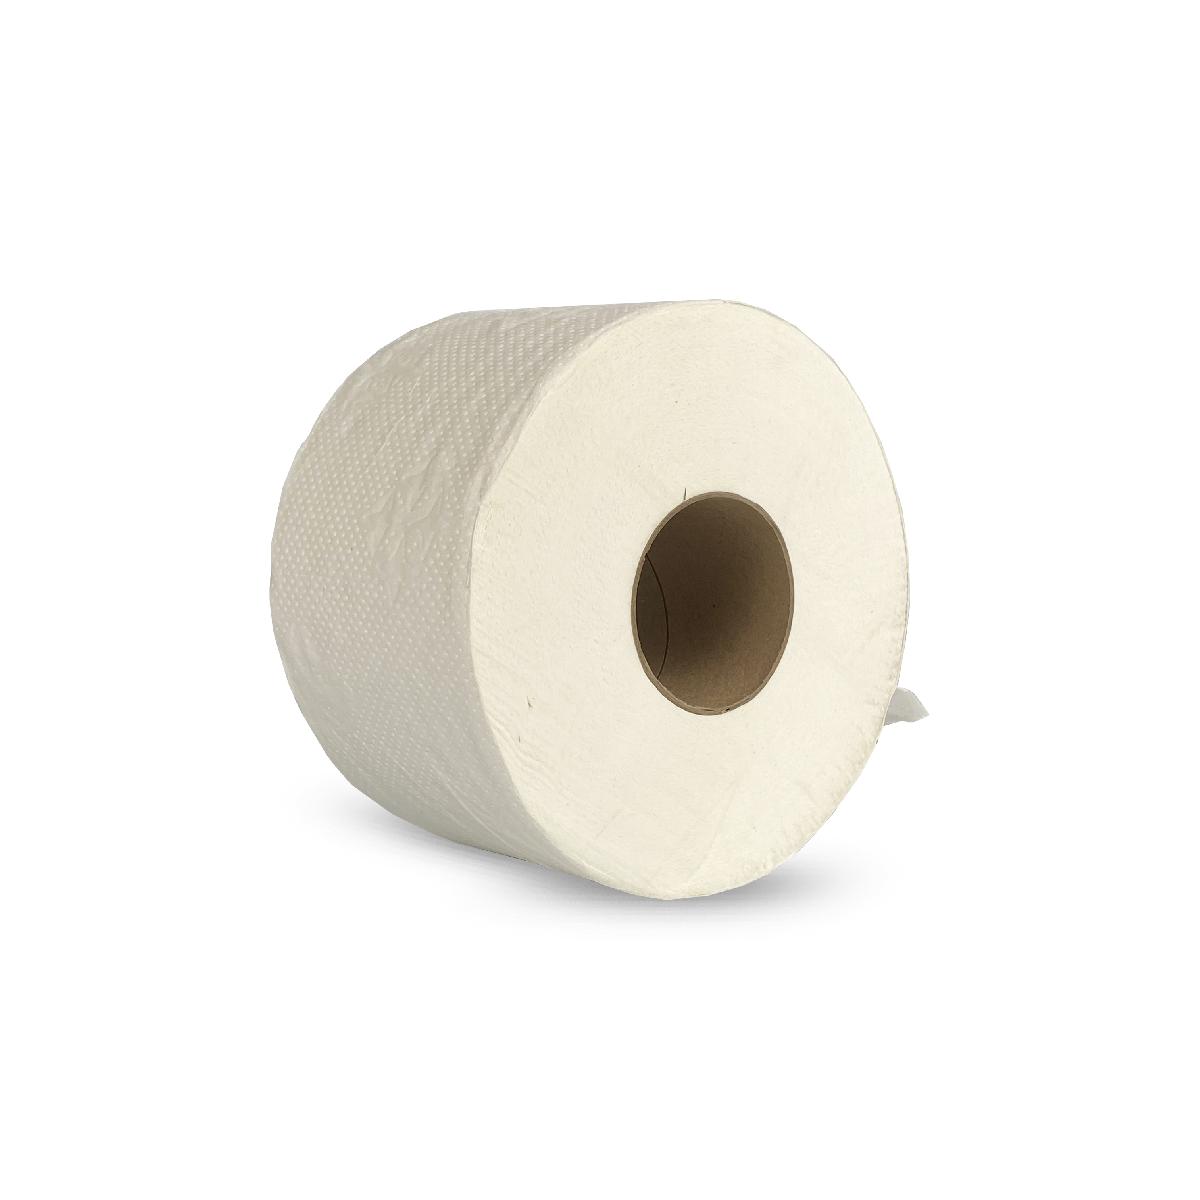 Туалетная бумага 2-сл 120м отбеленная для диспенсеров T2 т-0040 (12)